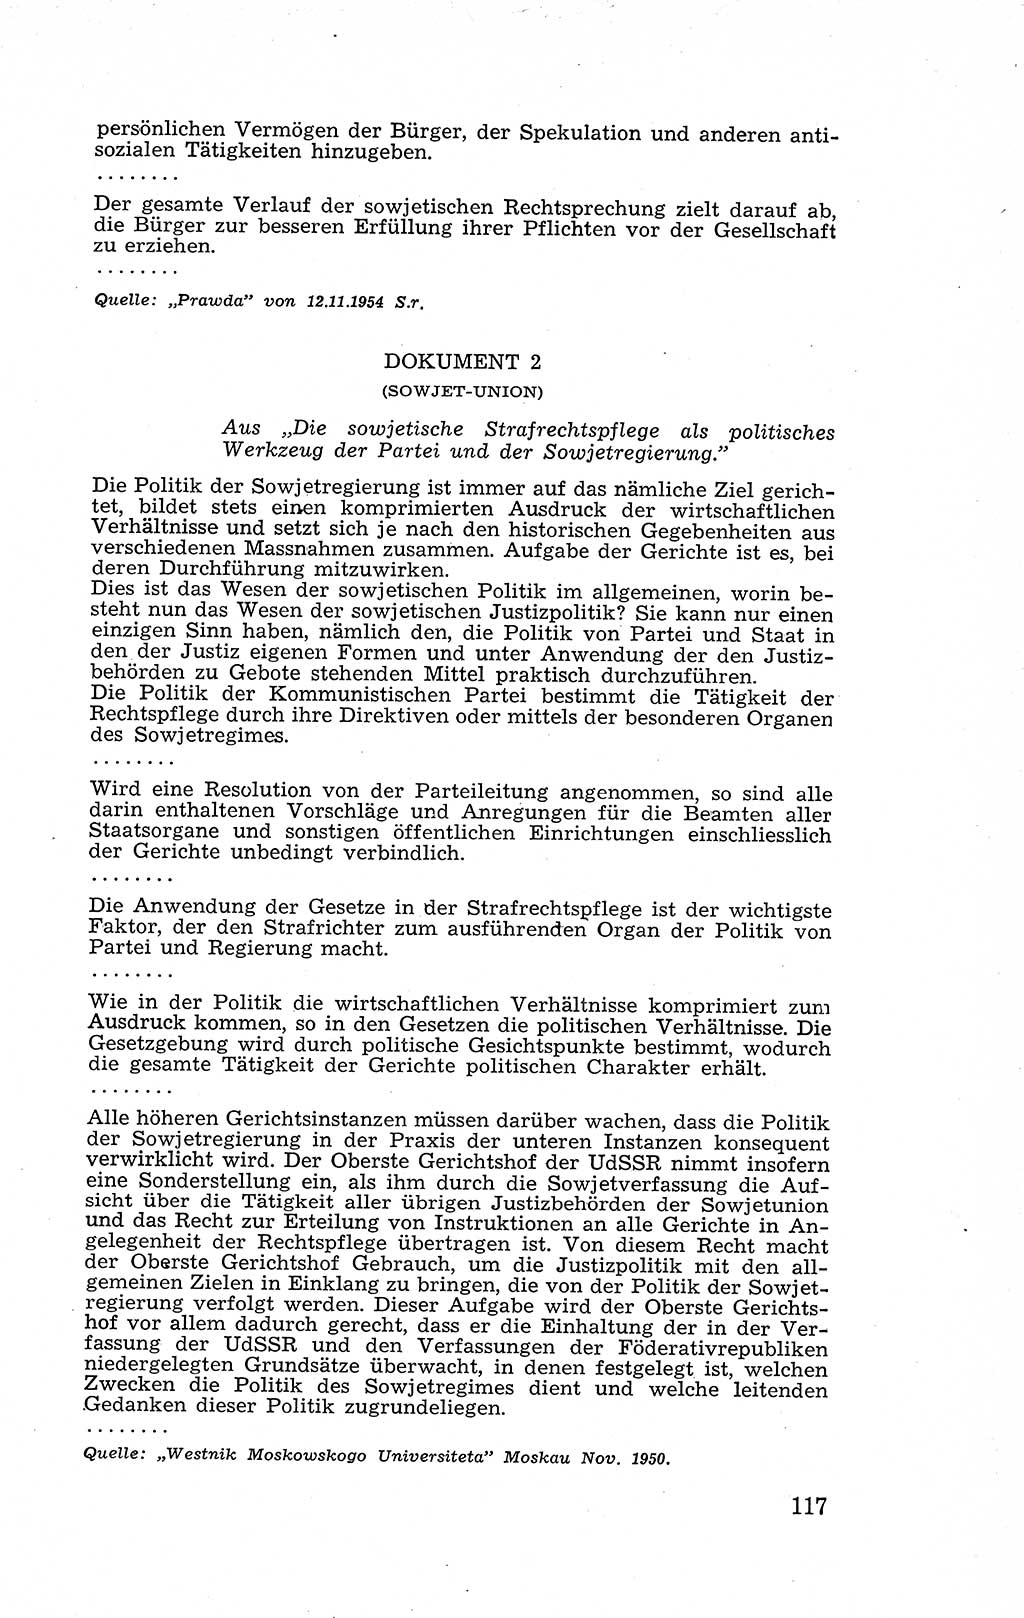 Recht in Fesseln, Dokumente, Internationale Juristen-Kommission [Bundesrepublik Deutschland (BRD)] 1955, Seite 117 (R. Dok. IJK BRD 1955, S. 117)